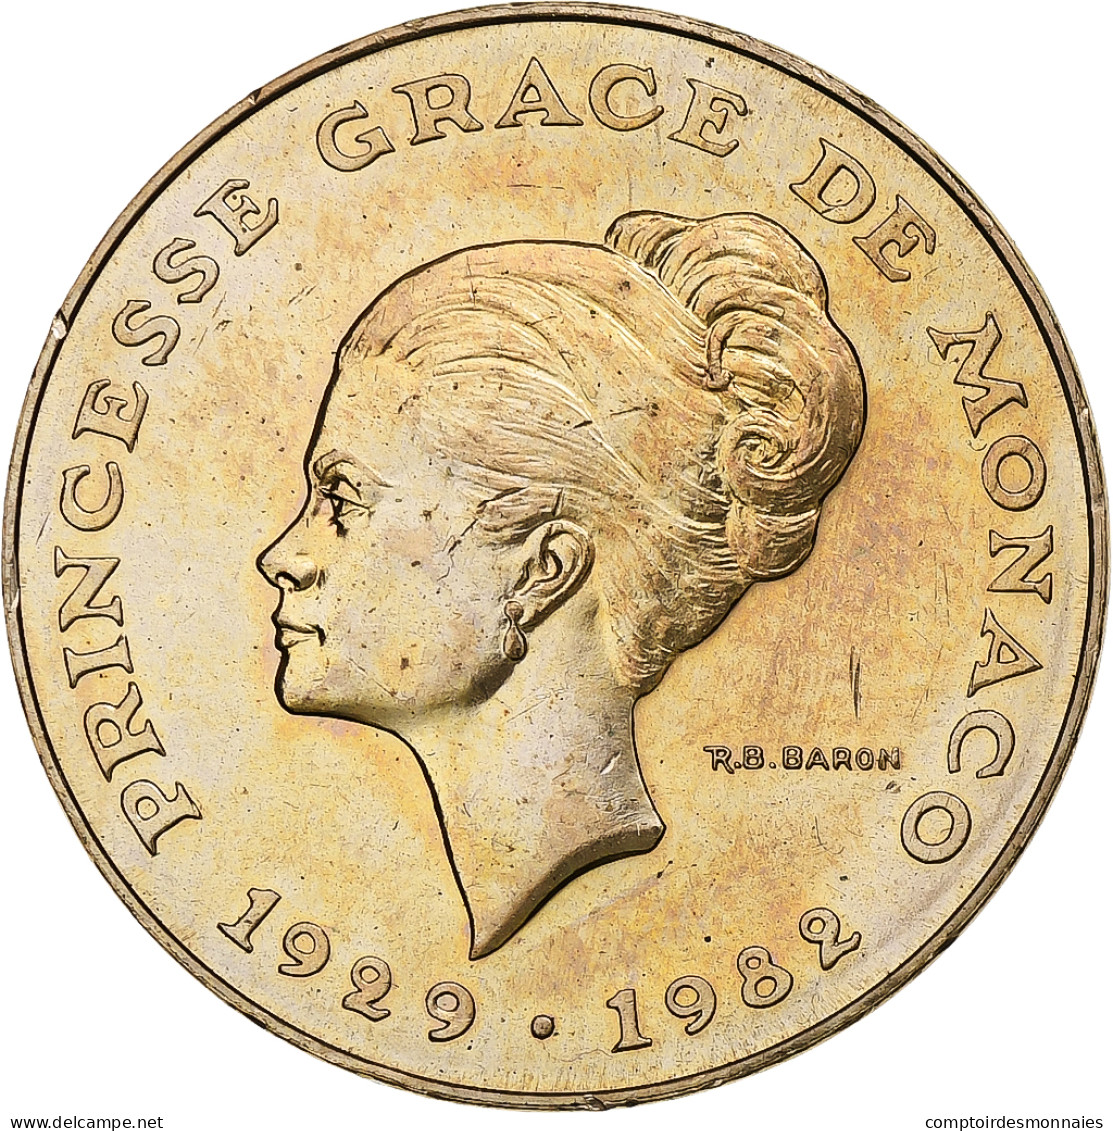 Monaco, Rainier III, 10 Francs, Princesse Grace, 1982, Monnaie De Paris - 1960-2001 Nieuwe Frank